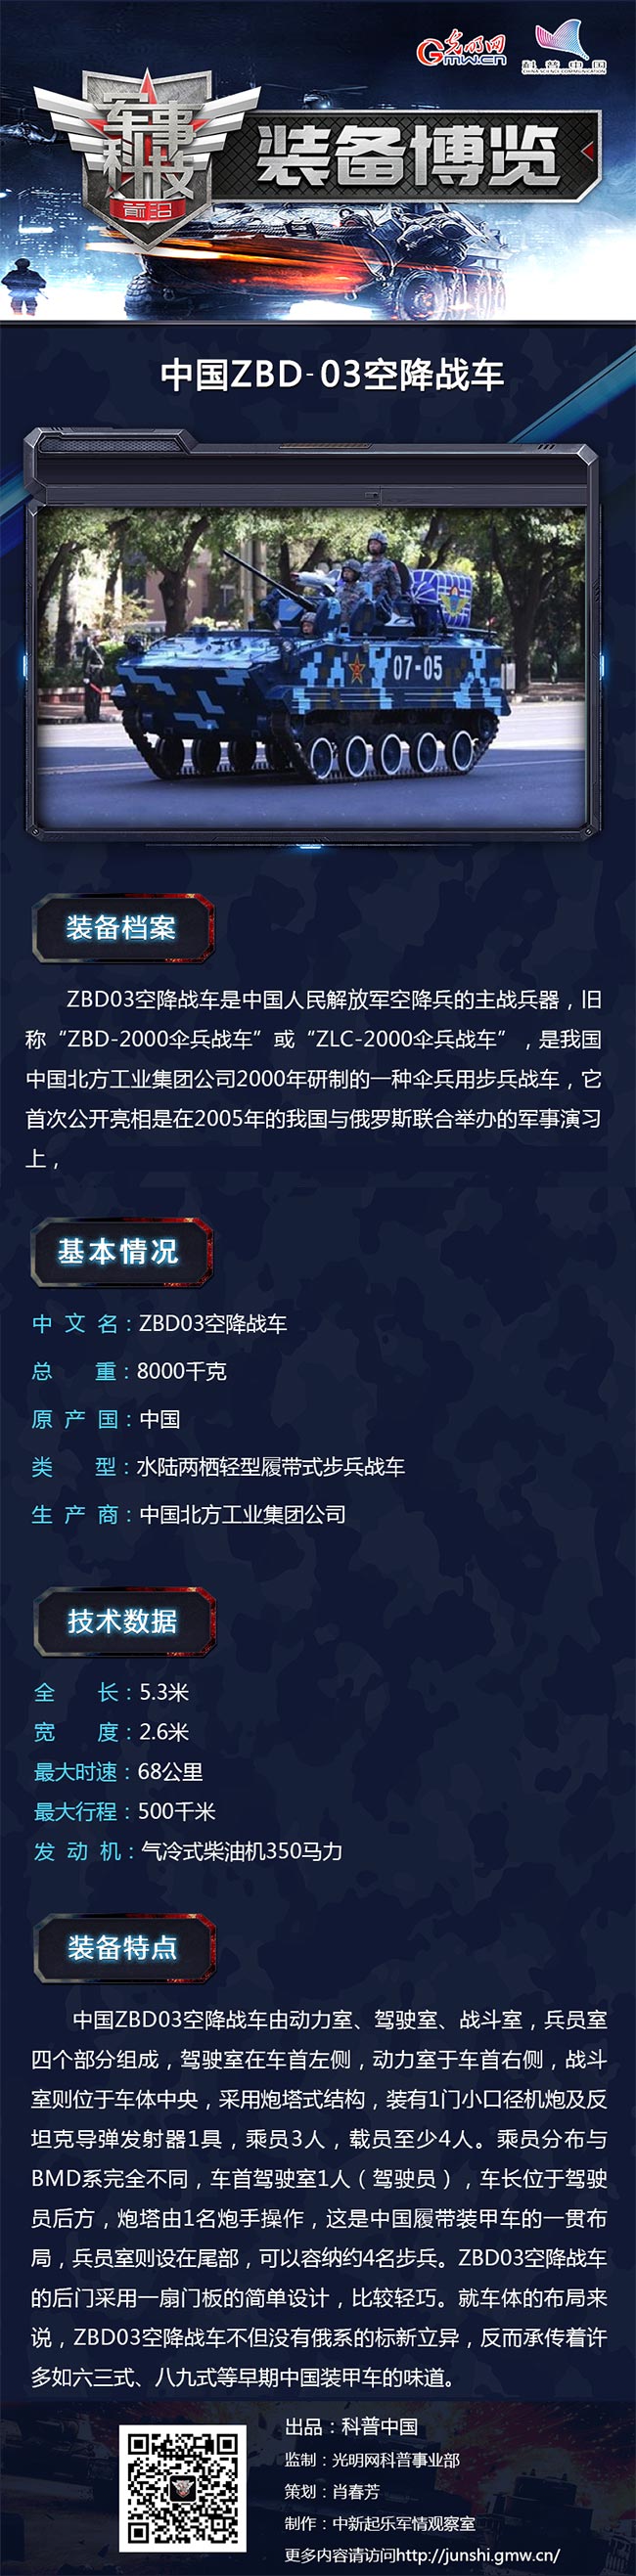 空降兵制胜利器——中国ZBD-03空降战车